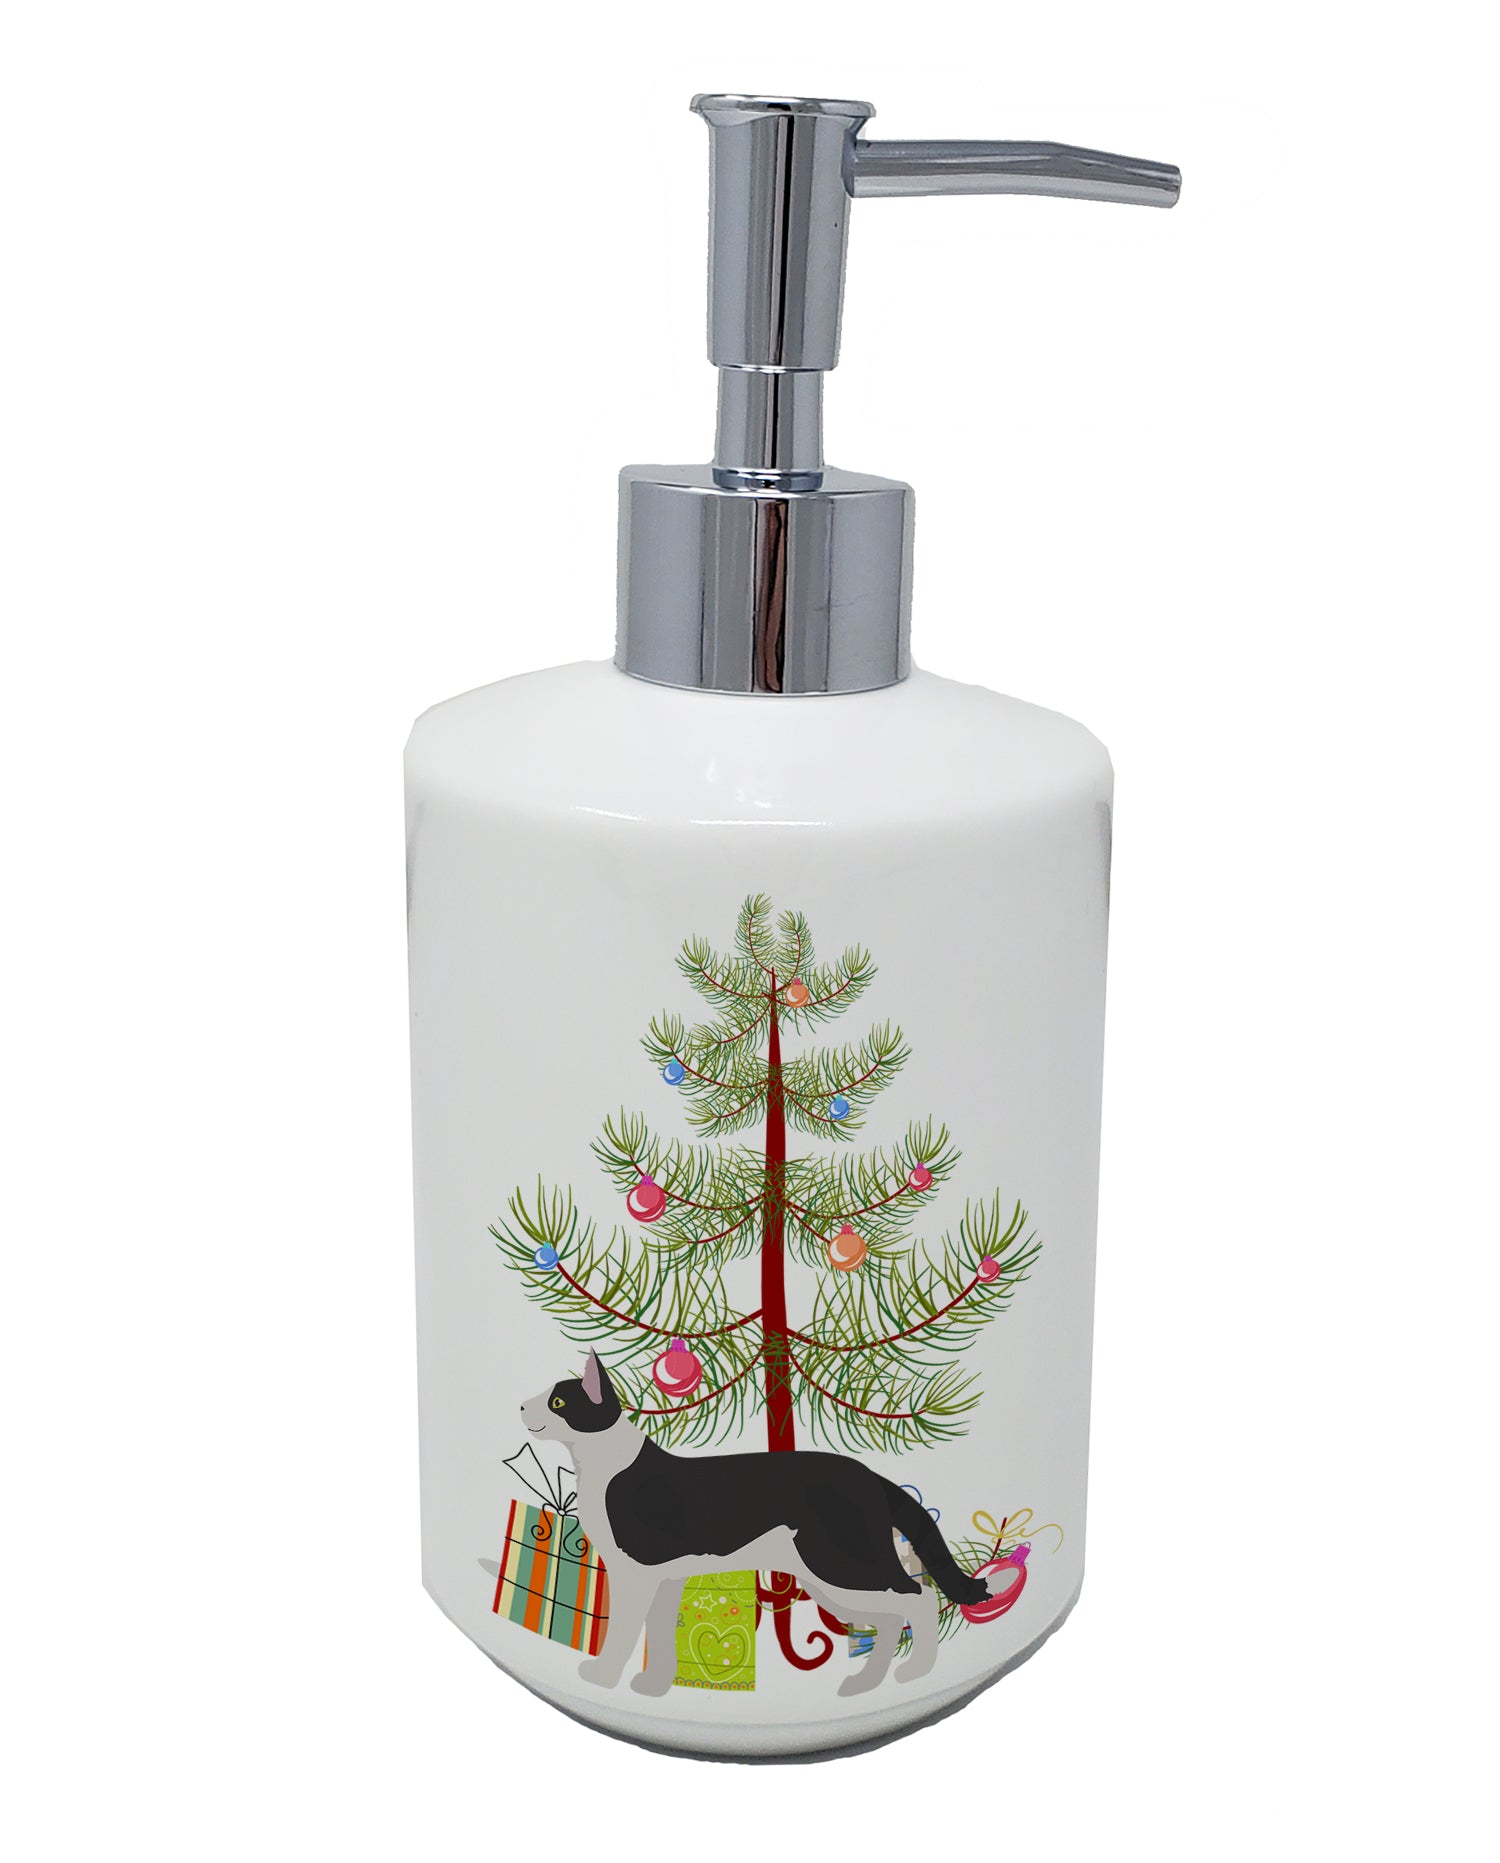 Buy this Bicolour Aegean Cat Merry Christmas Ceramic Soap Dispenser